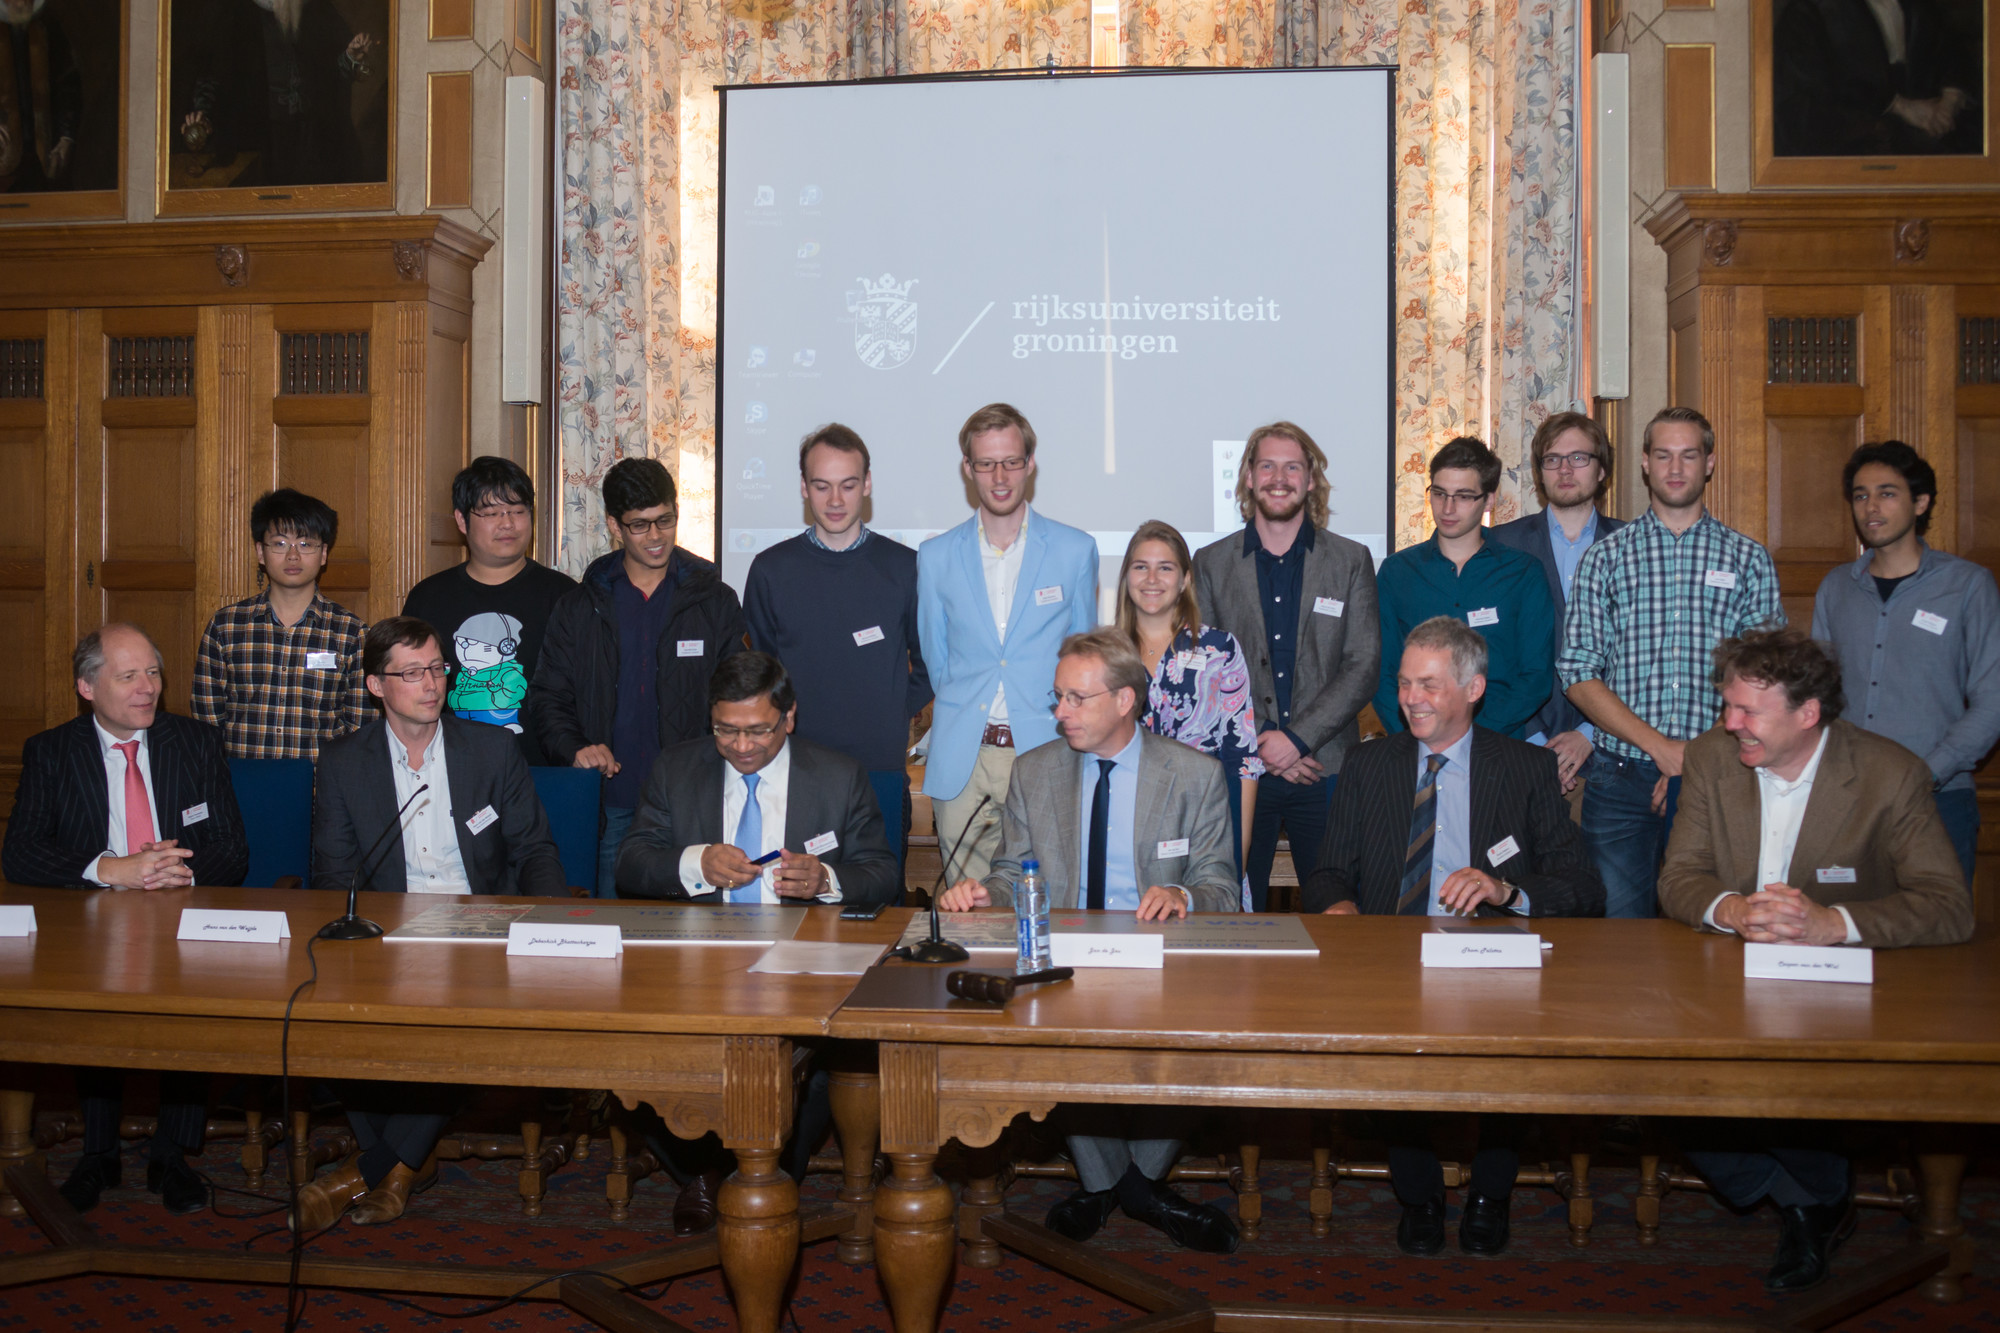 De ondertekening van de samenwerkingsovereenkomstThe signing of the agreement between Tata Steel and the University of Groningen